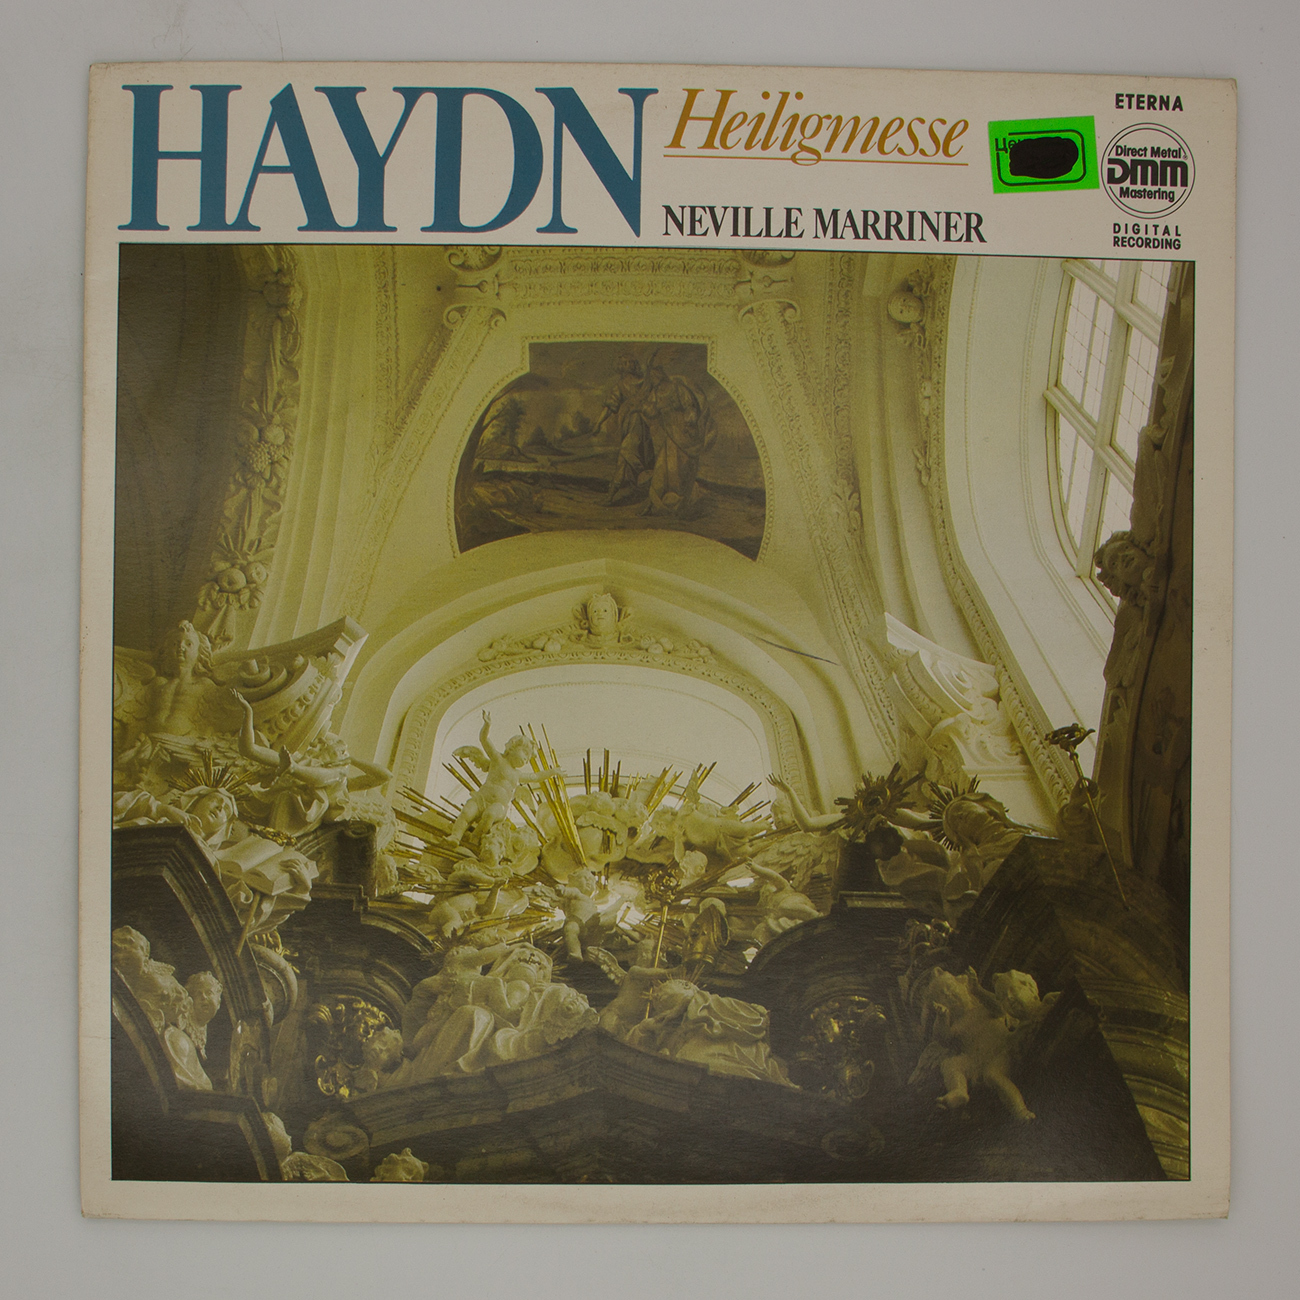 Гайдн мессы. Neville Marriner пластинка. Joseph Haydn пластинка виниловая. Шедевры классической музыки винил. Пластинка Joseph Haydn Венгрия.